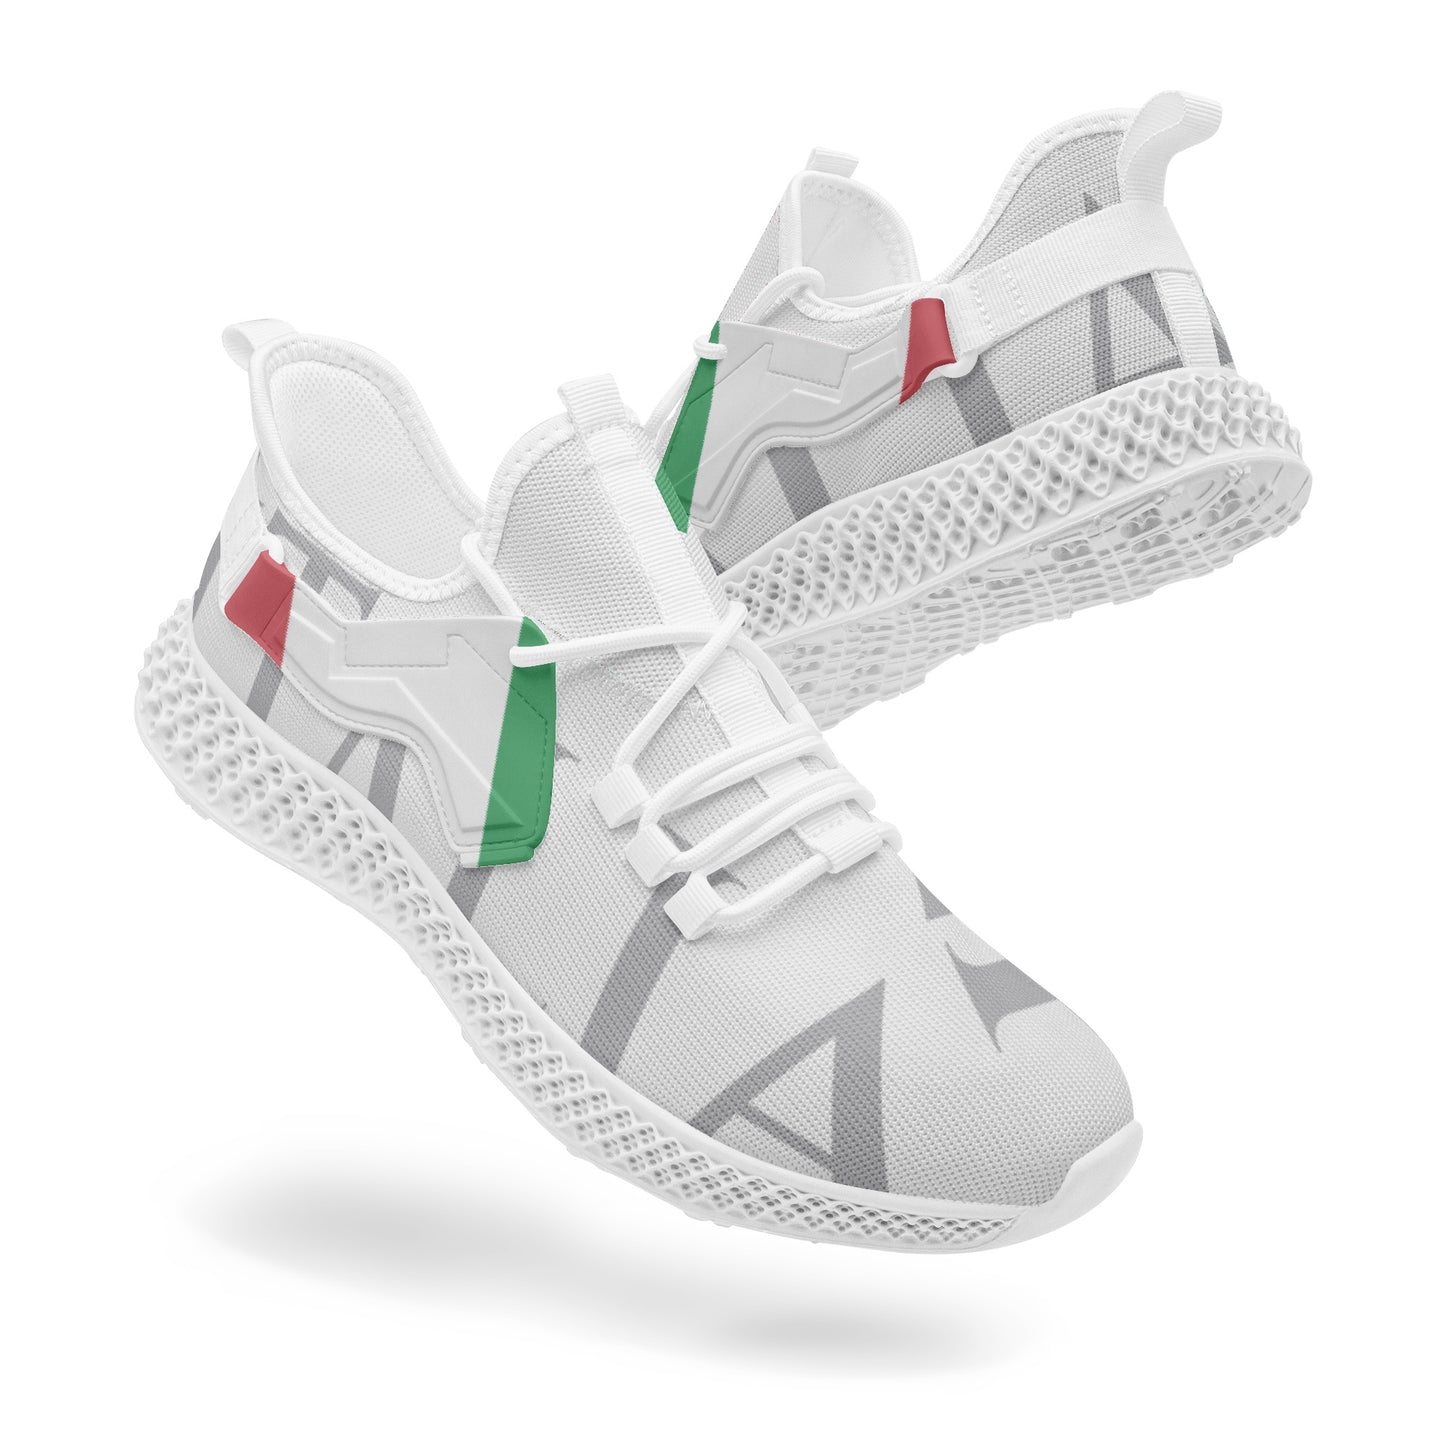 Italia Net Mesh Knit Sneakers - men/women sizes